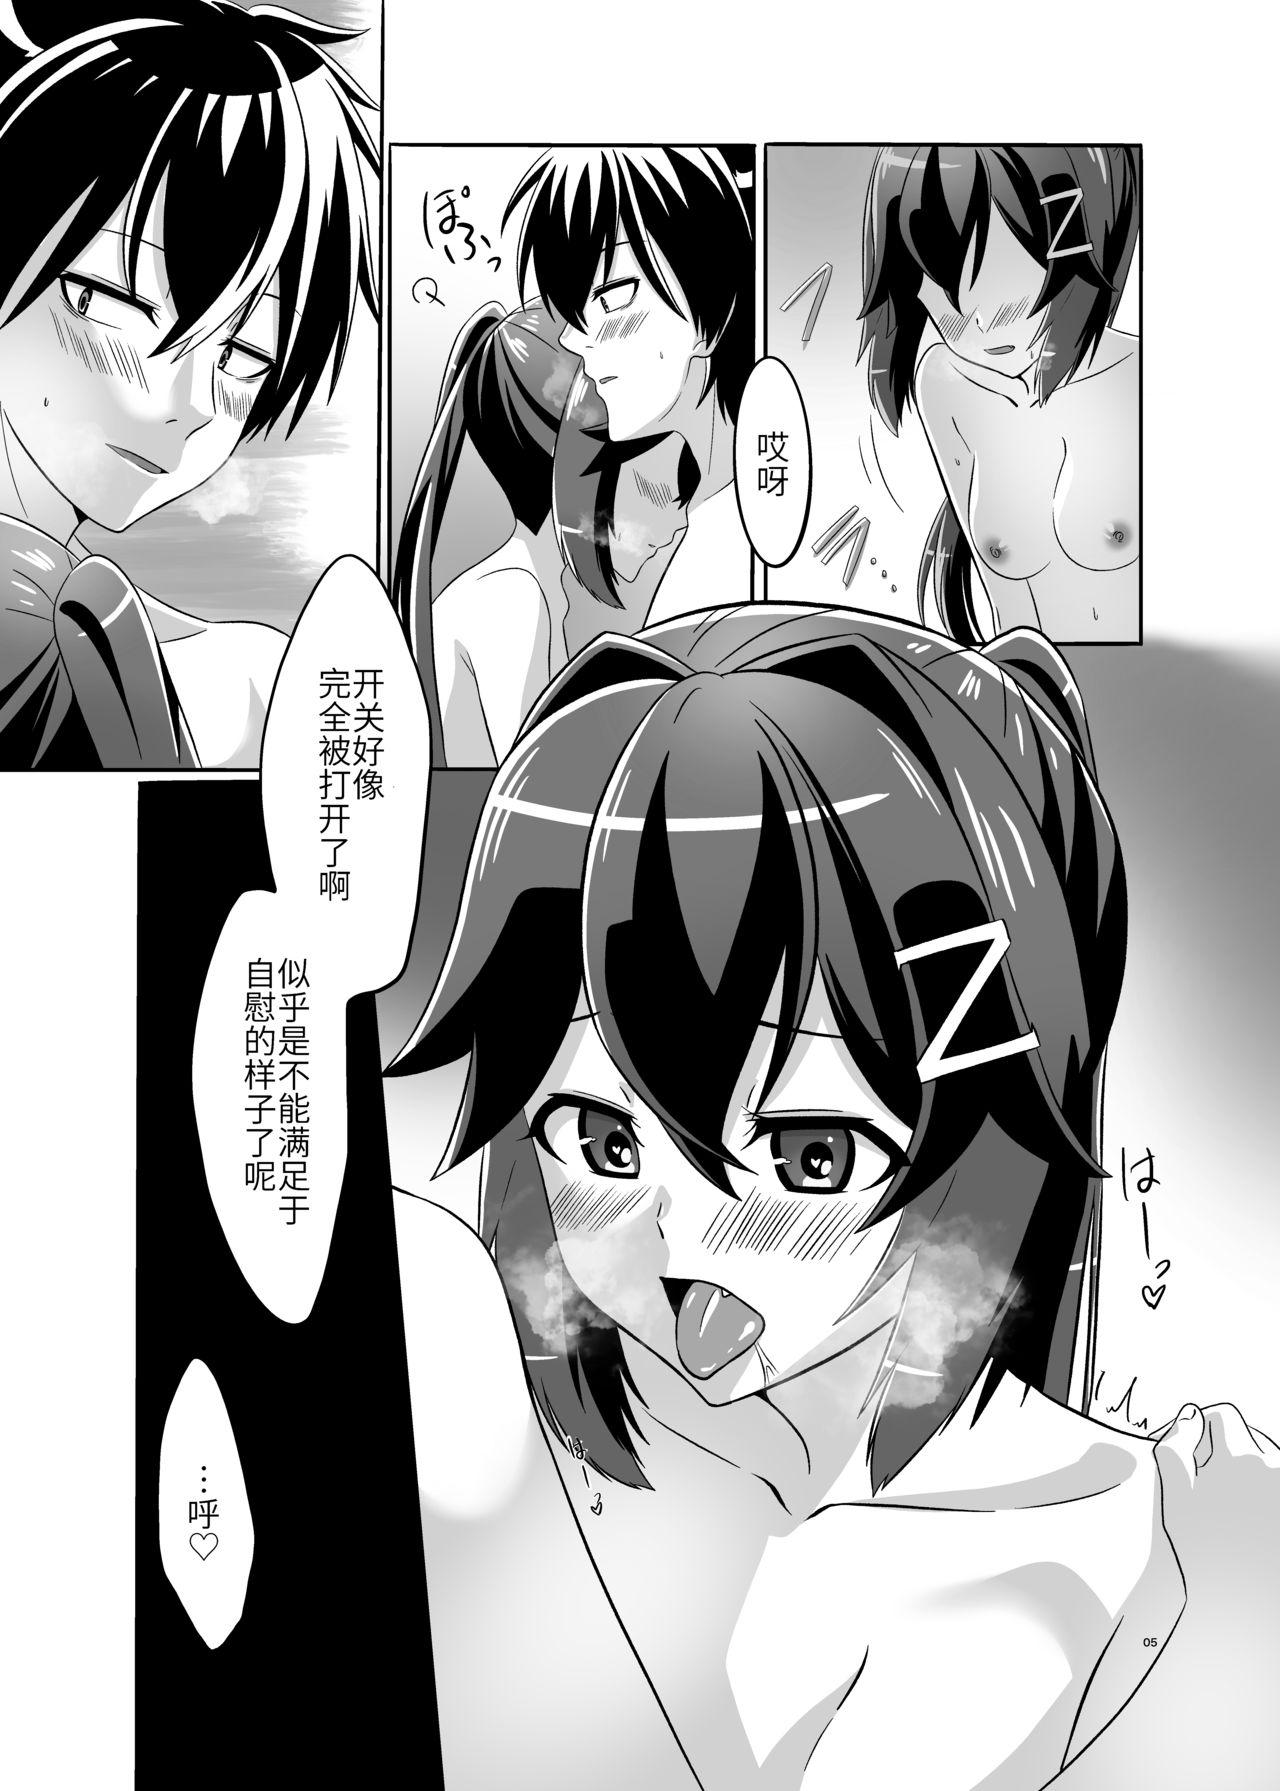 Cuck Itsumo no yoru futari no yotogi⑴ - Warship girls Sexcam - Page 6